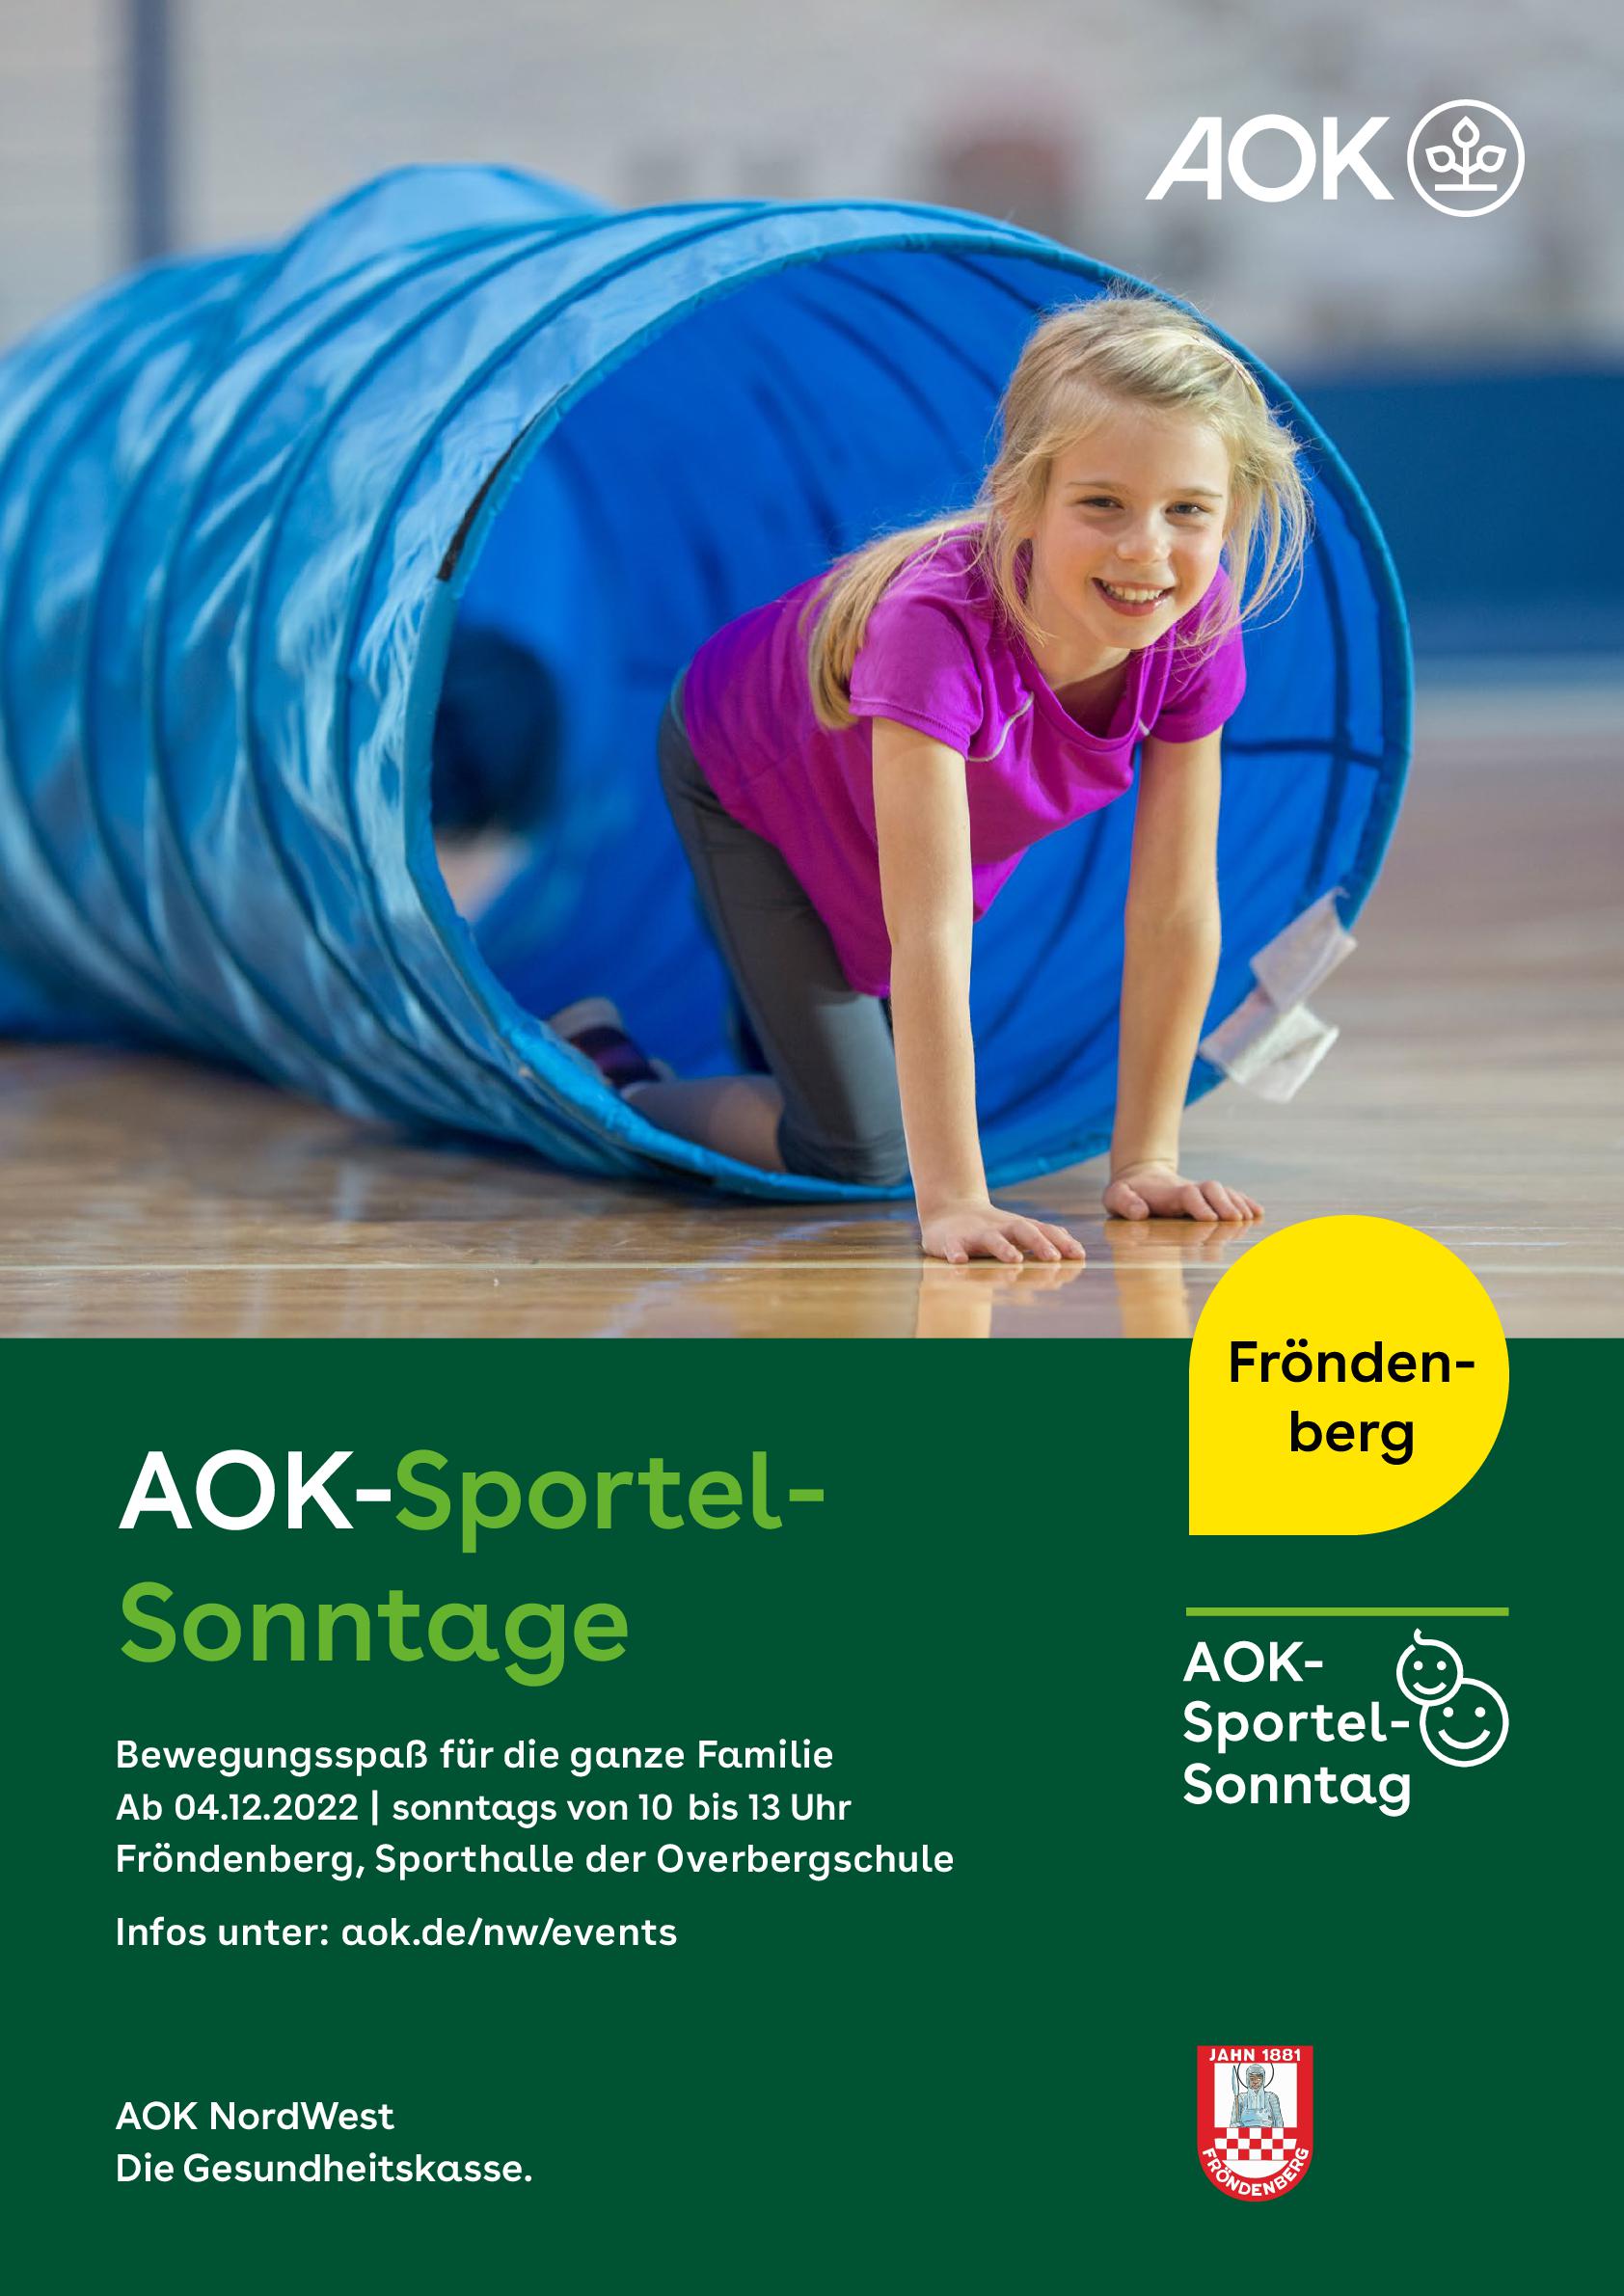 AOK NW 0223 SportelSonntag Plakat Fro ndenberg A3 RZ ANS01 001